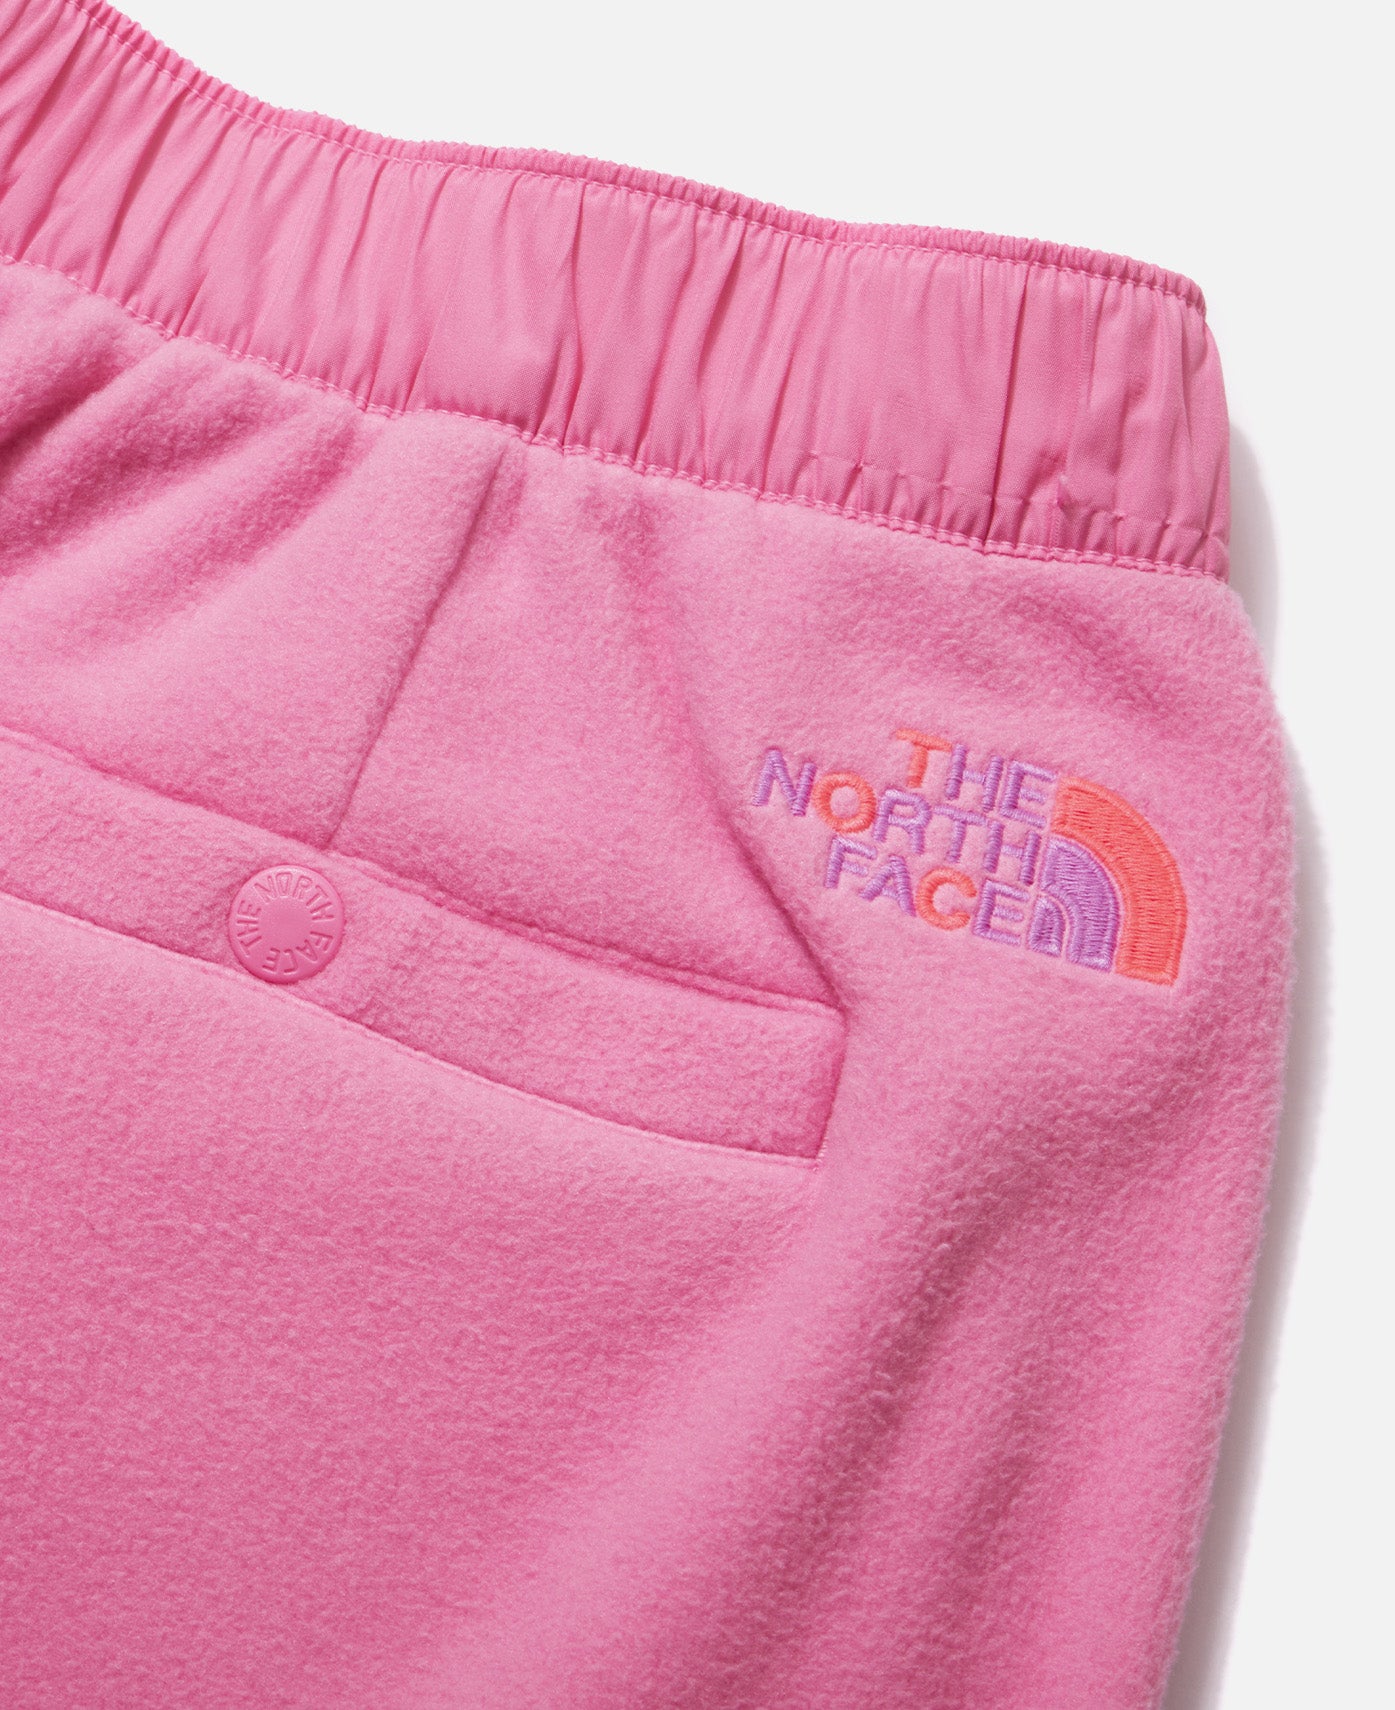 CLOT x The North Face - Teen 2 In 1 Fleece Pants (Pink) – JUICESTORE